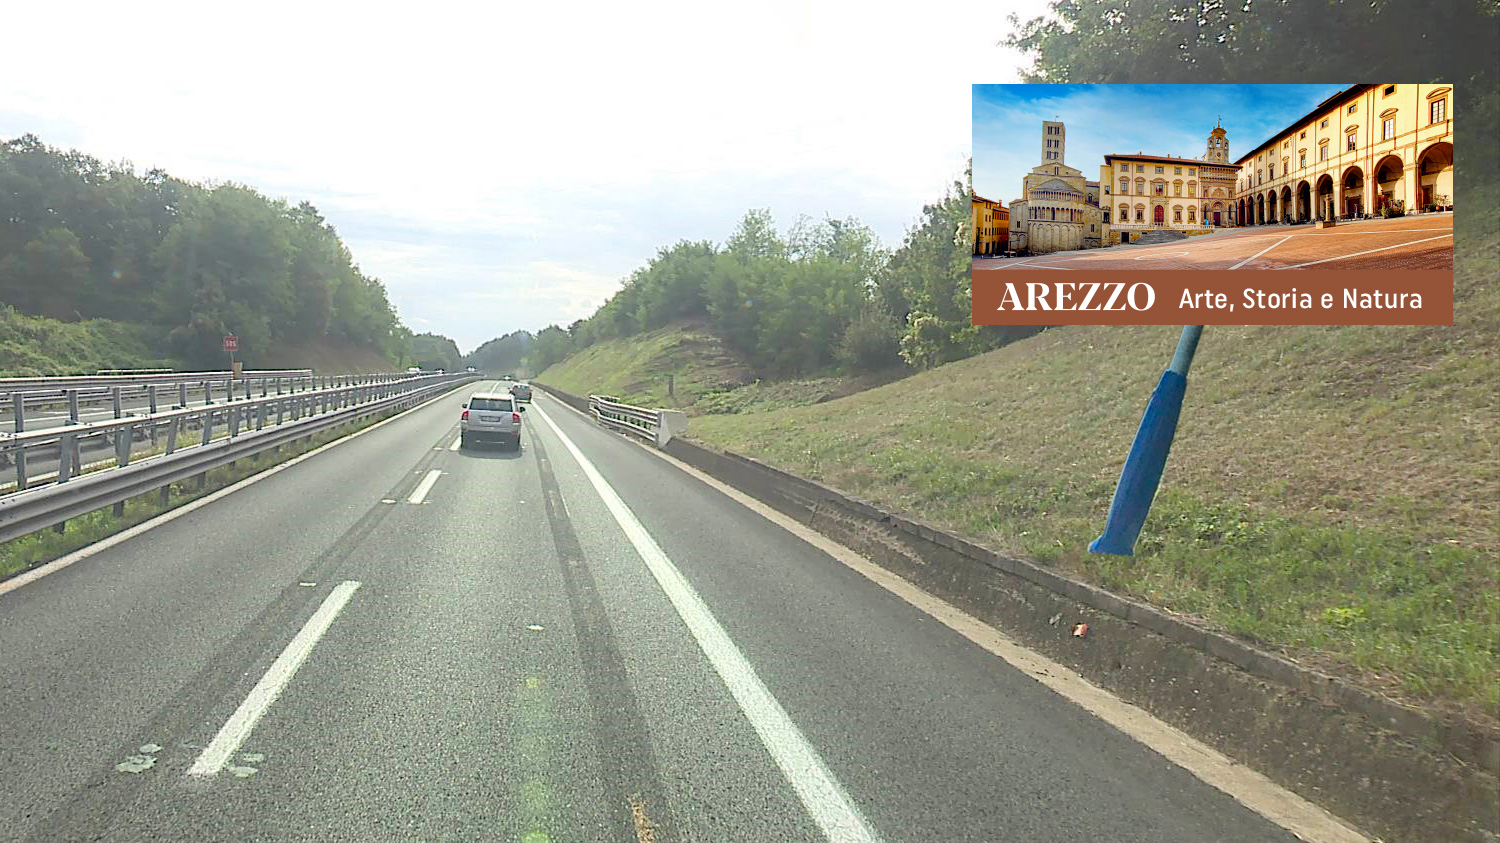 Con un’immagine di Piazza Grande Arezzo arriva anche sulla A1. Dal prossimo 10 settembre due “cartelli touring” saranno posizionati prima dell’uscita di Arezzo